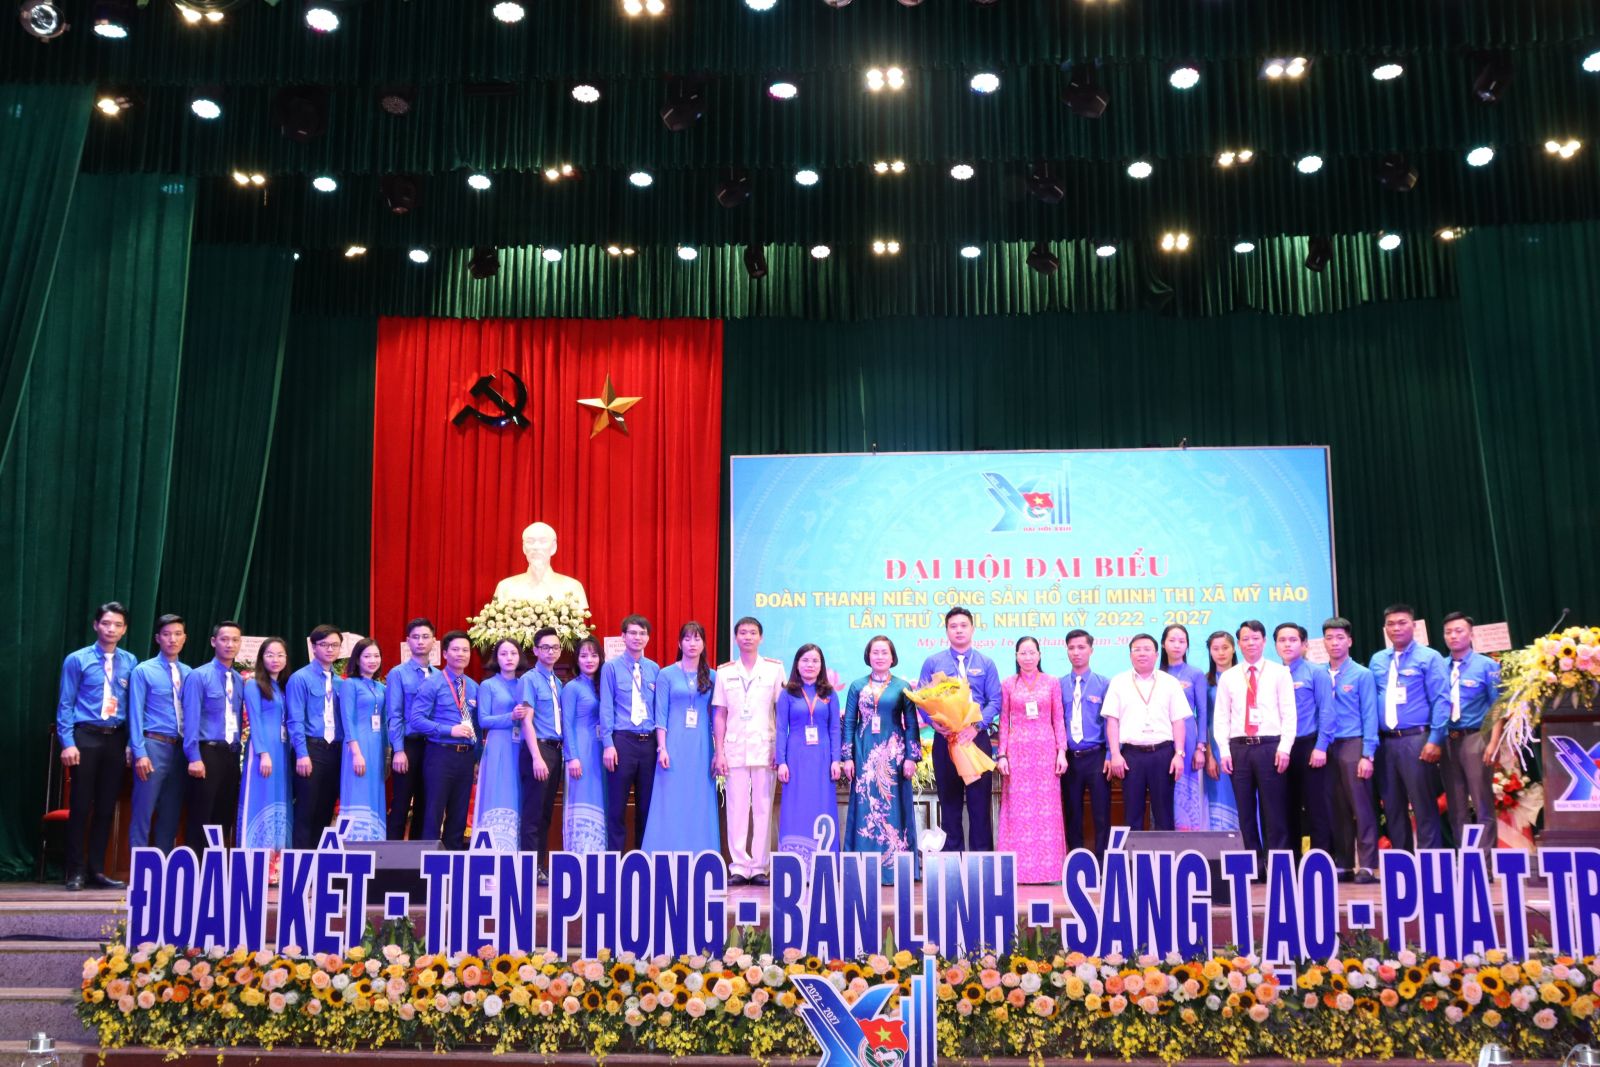 Thị đoàn Mỹ Hào tổ chức thành công Đại hội Đại biểu Đoàn TNCS Hồ Chí Minh thị xã Mỹ Hào lần thứ XXIII, nhiệm kỳ 2022-2027